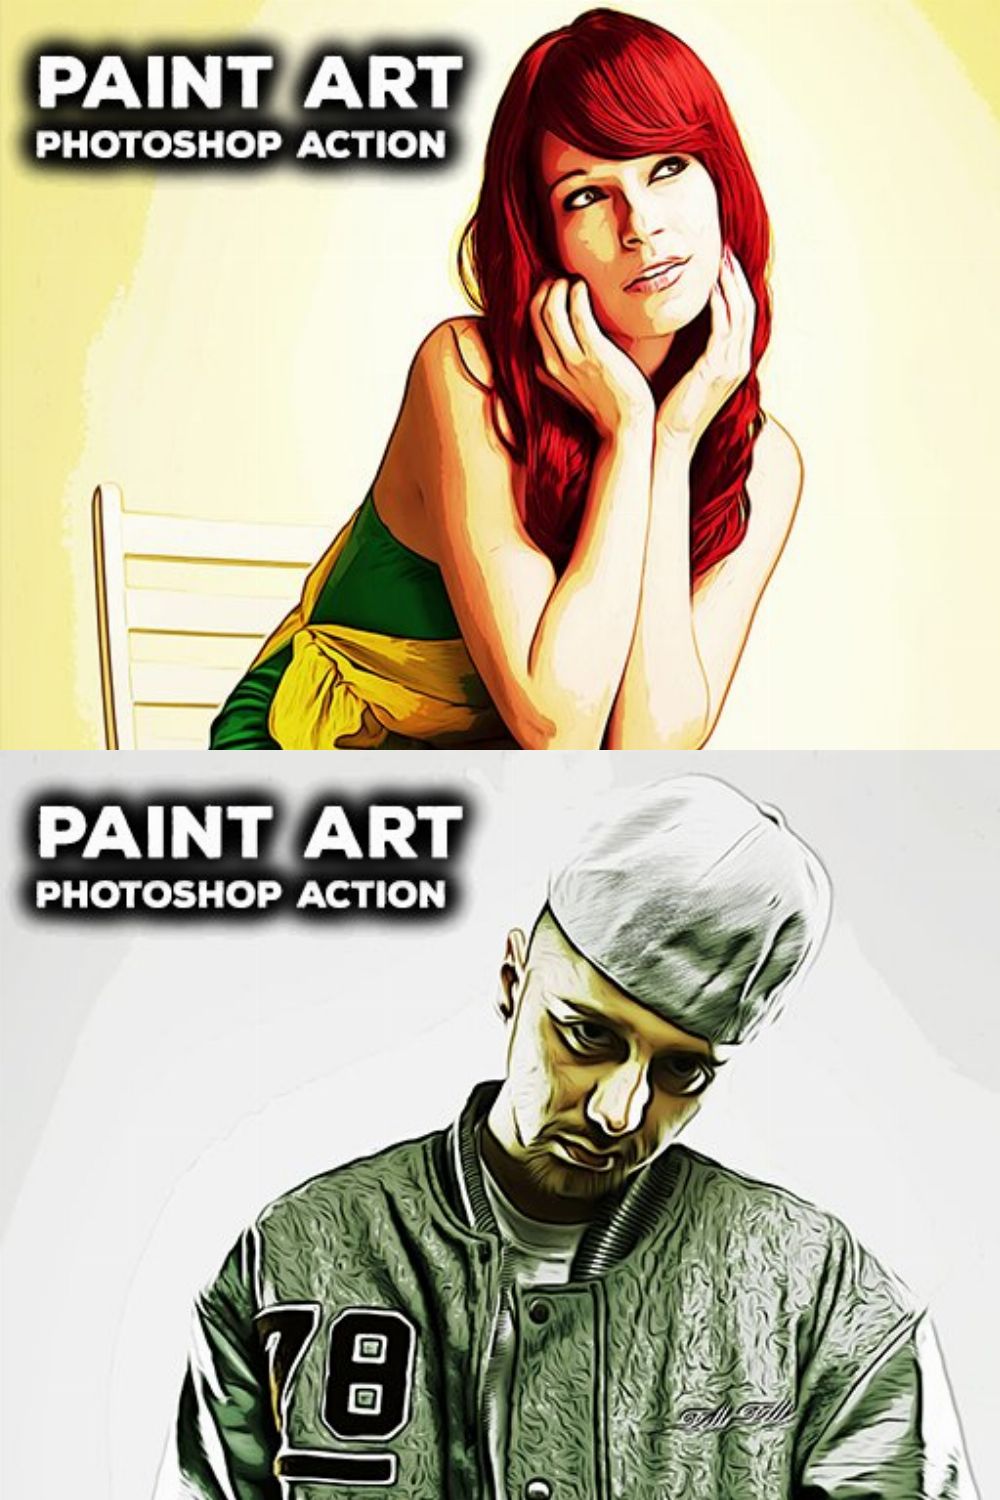 Paint Art - Photoshop Action pinterest preview image.